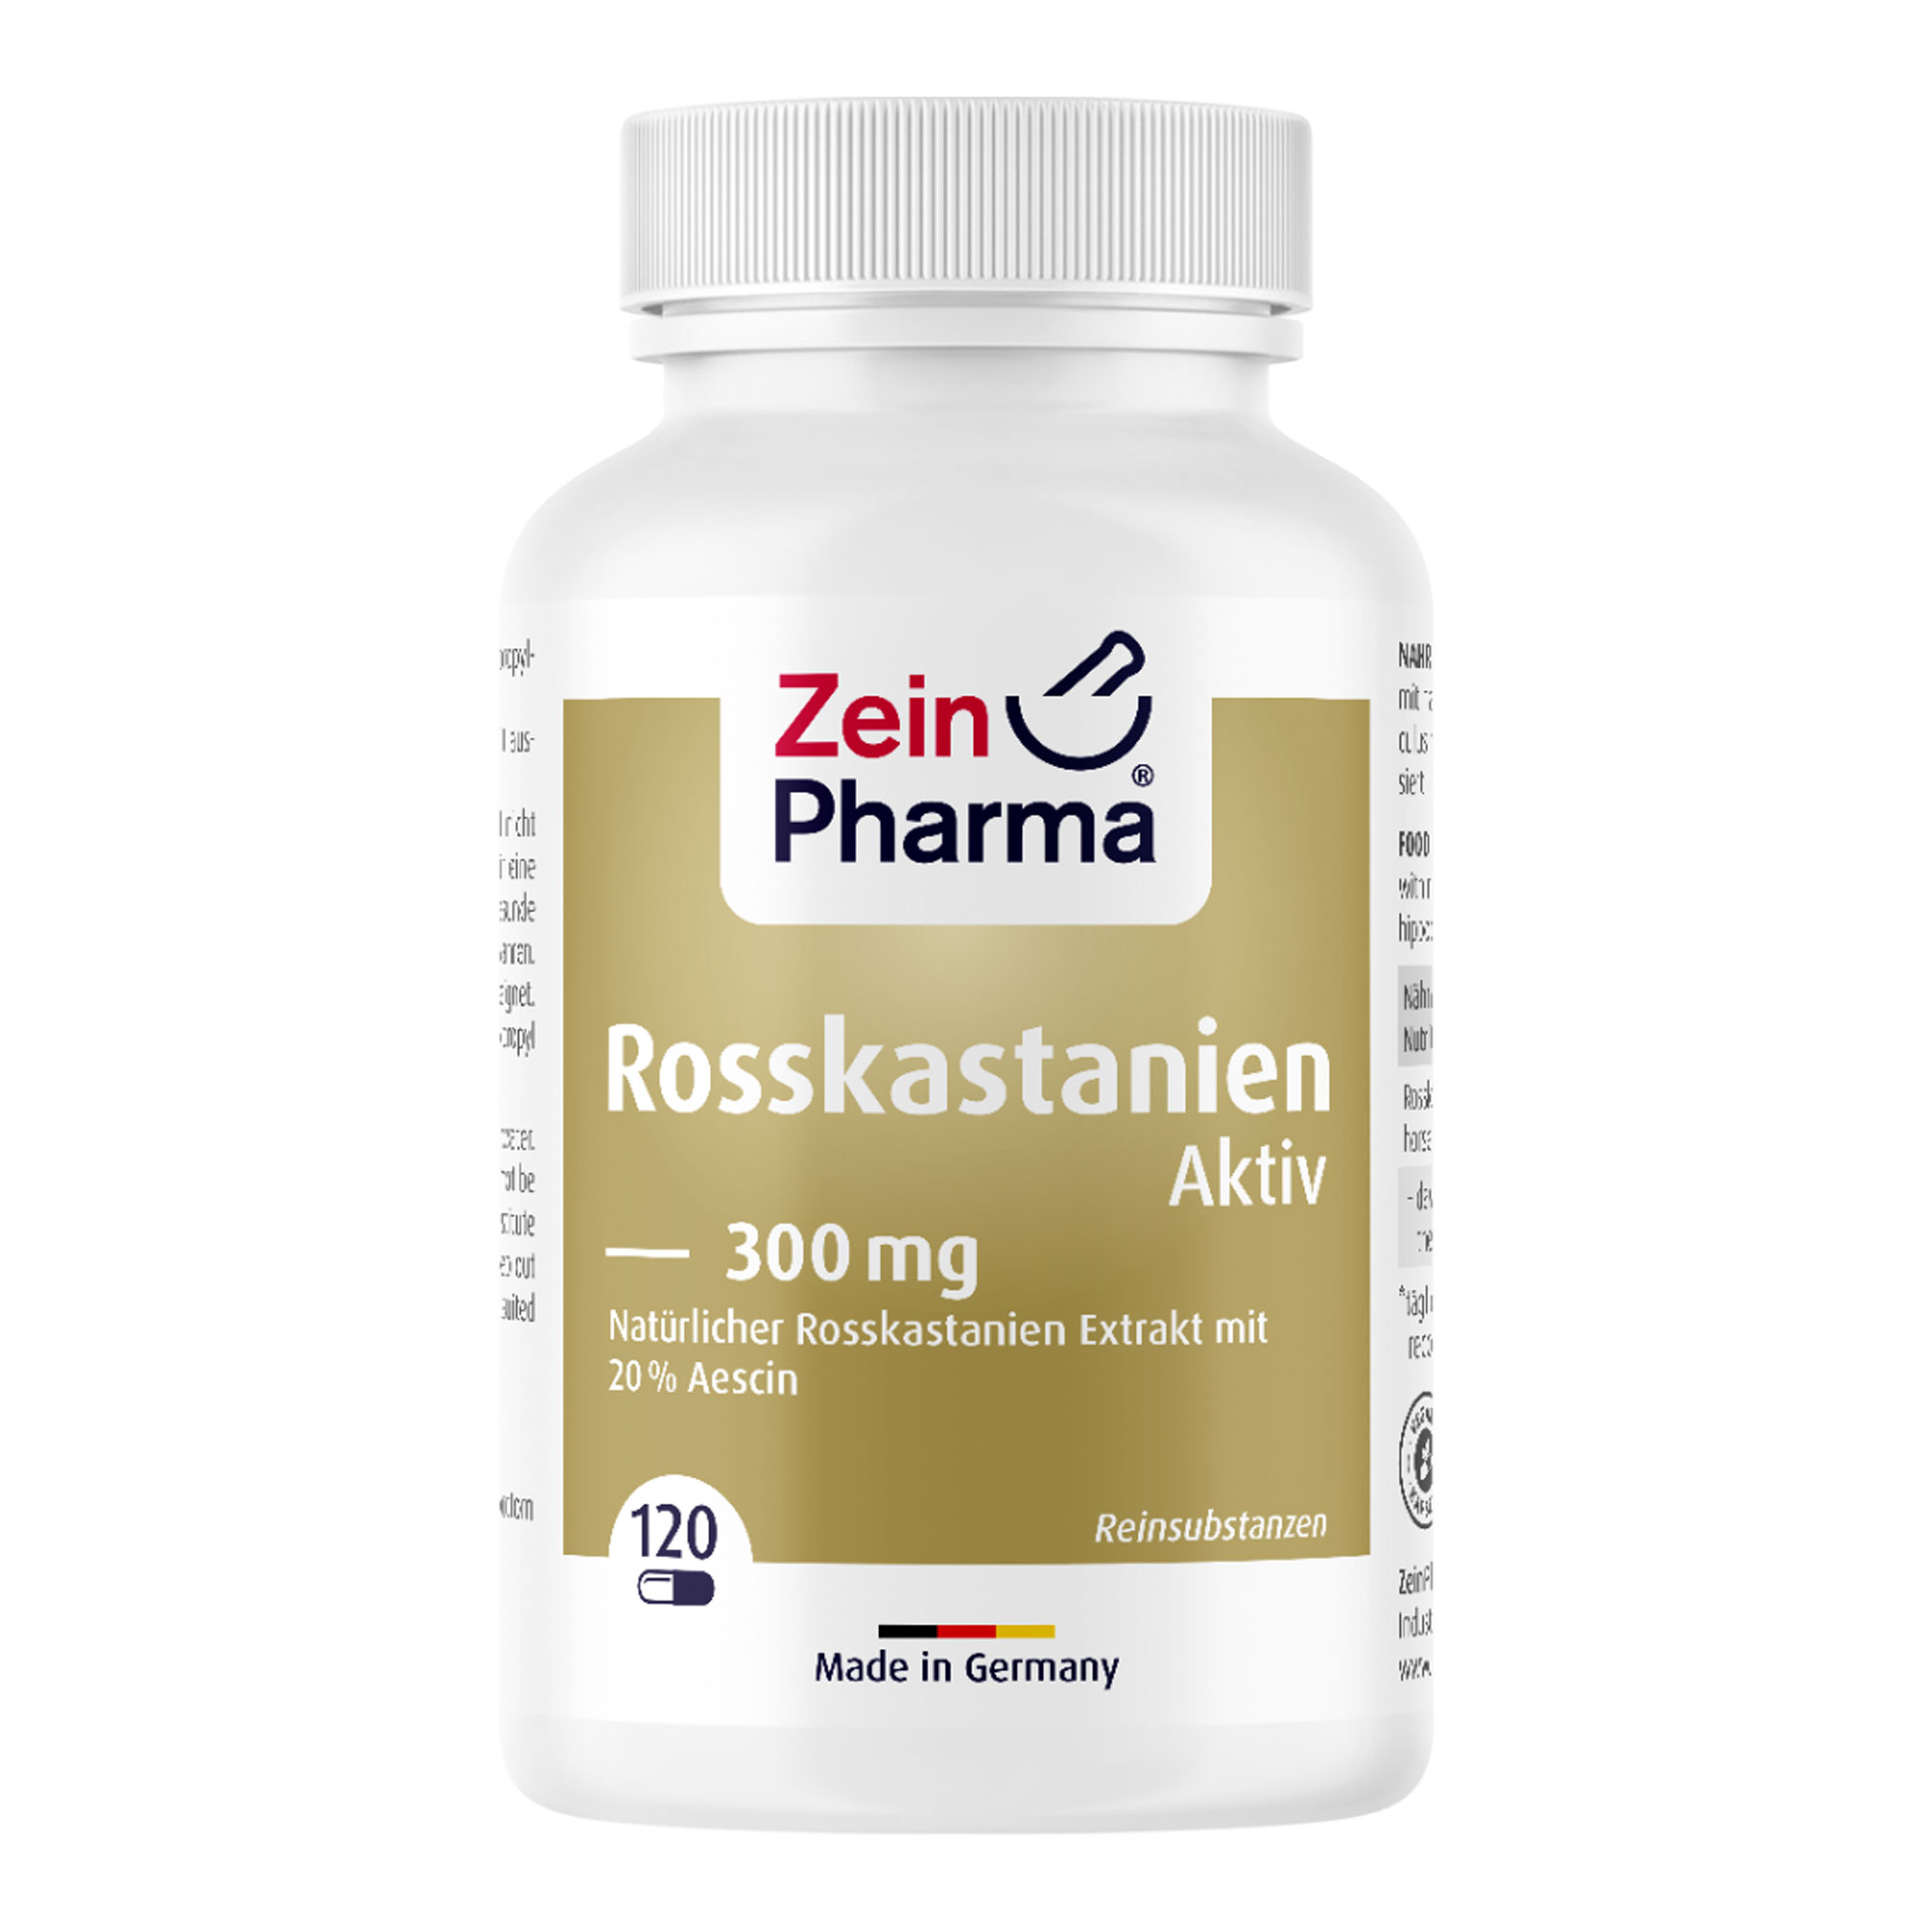 Nahrungsergänzungsmittel mit natürlichem Extrakt aus Rosskastanien (Aesculus hippocastanum), auf 20 % Aescin standardisiert.